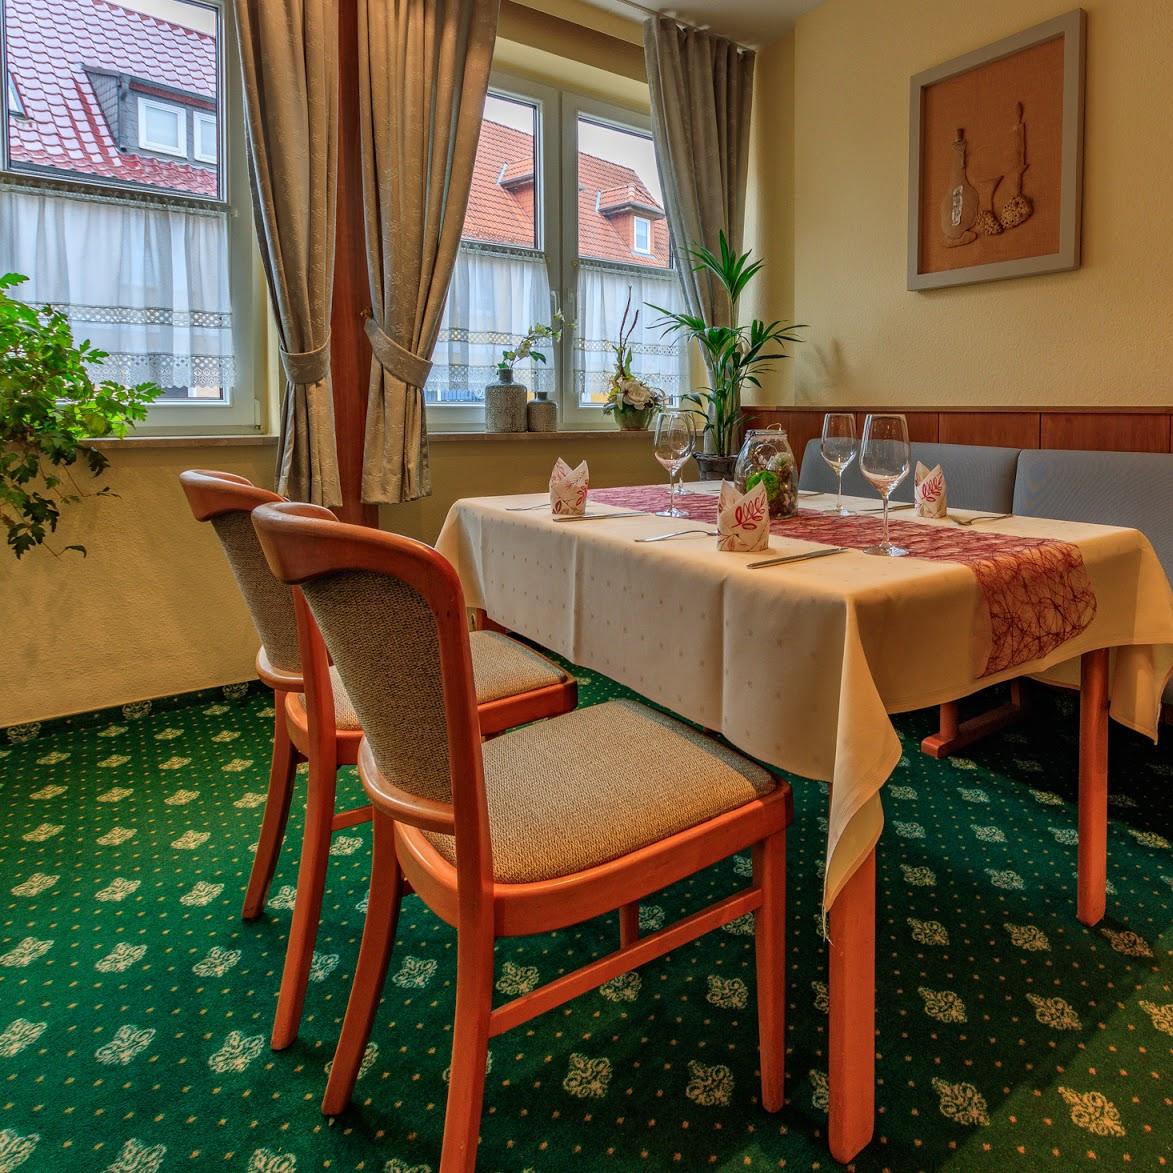 Restaurant "Mecklenburger Bauernstube" in  Demmin